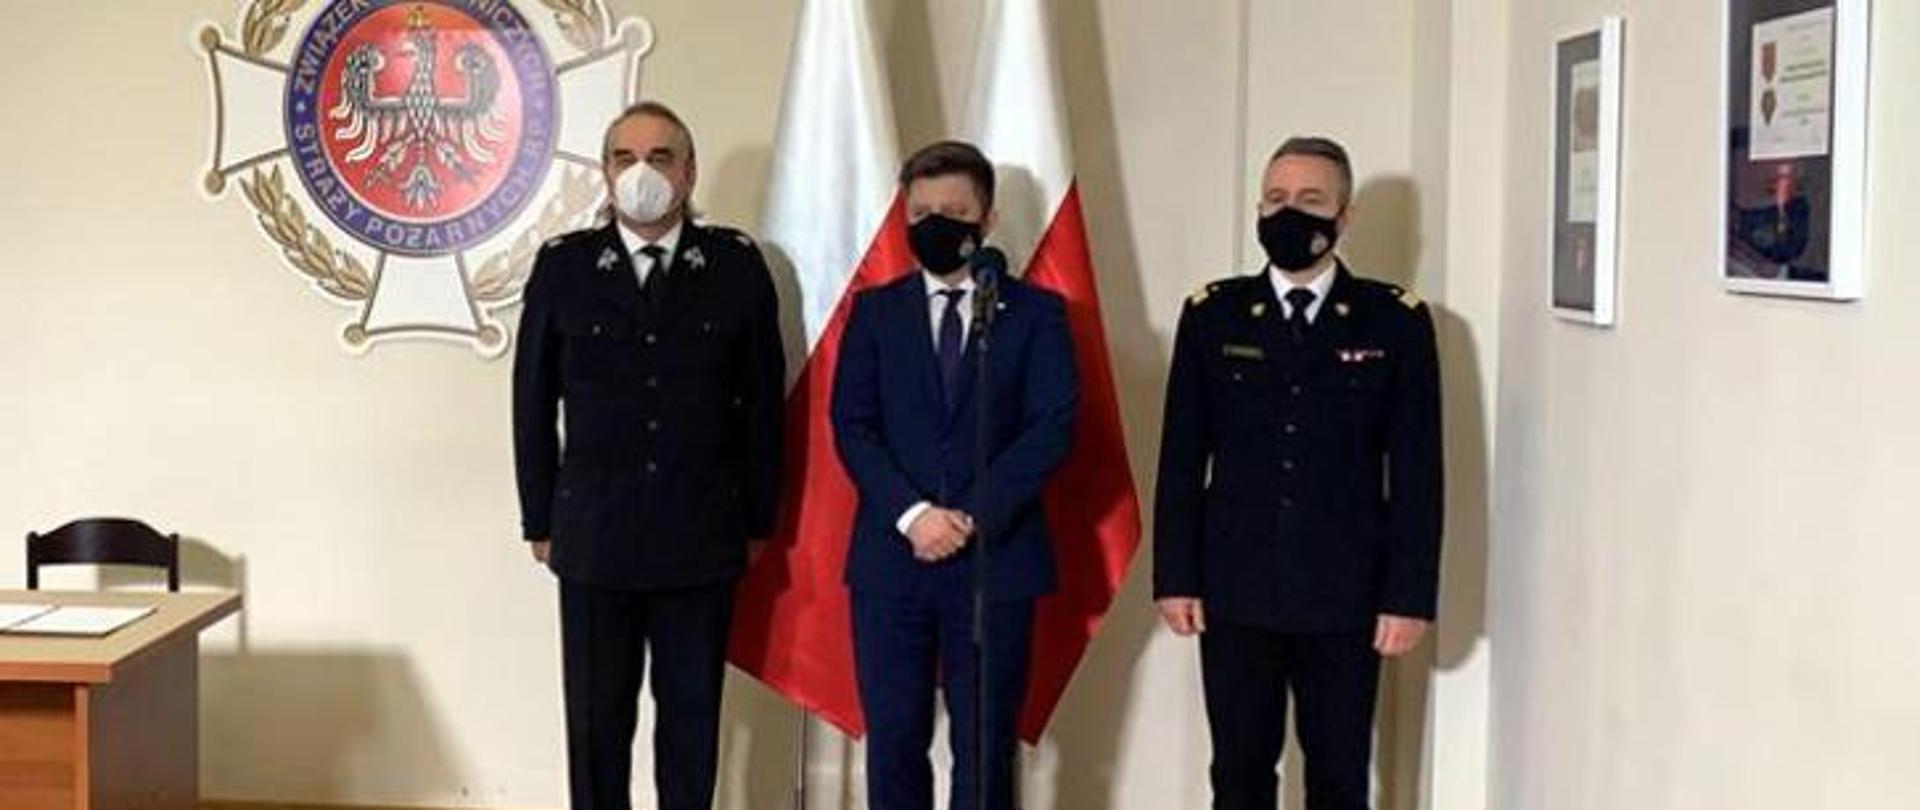 Trzech mężczyzn stoi w rzędzie na tle dwóch flag Rzeczypospolitej Polski i logo ZOSP RP. Mężczyzna stojący w środku ubrany jest w granatowy garnitur , mężczyźni stojący po jego bokach są ubrani w mundury wyjściowe. Wszyscy mają na twarzach maseczki zasłaniające twarz i usta.